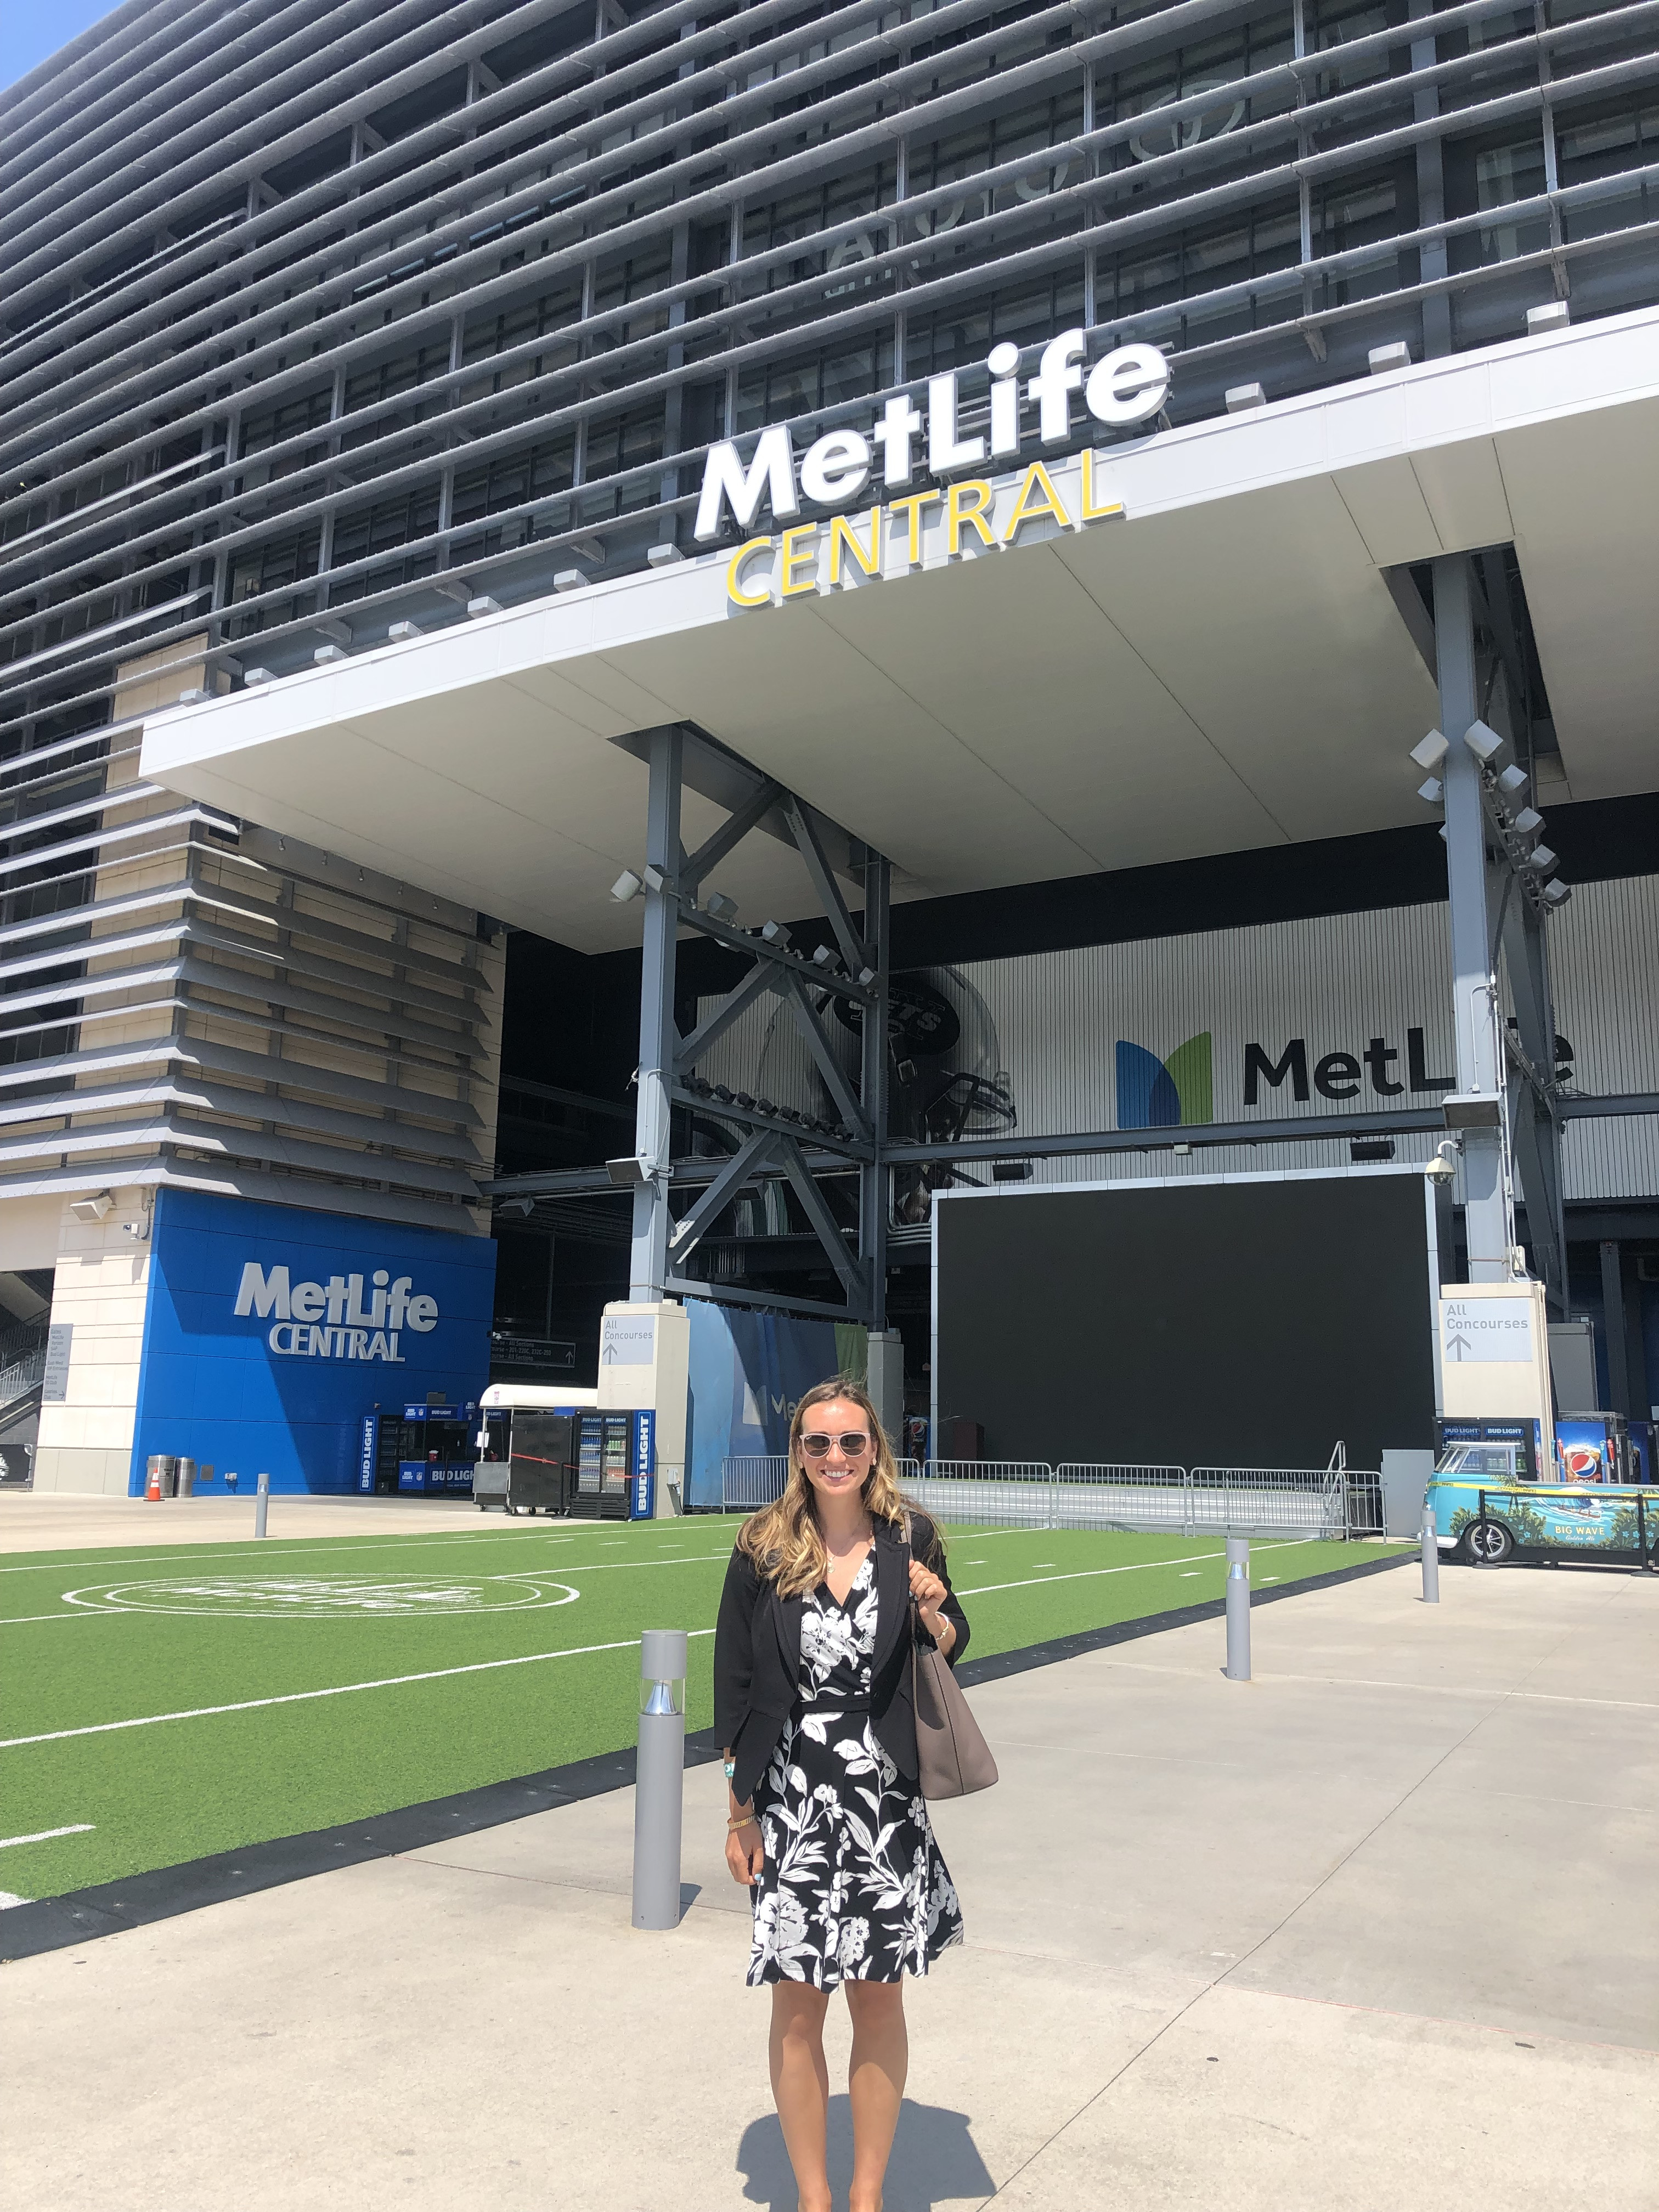 Katie in front of Metlife stadium sign